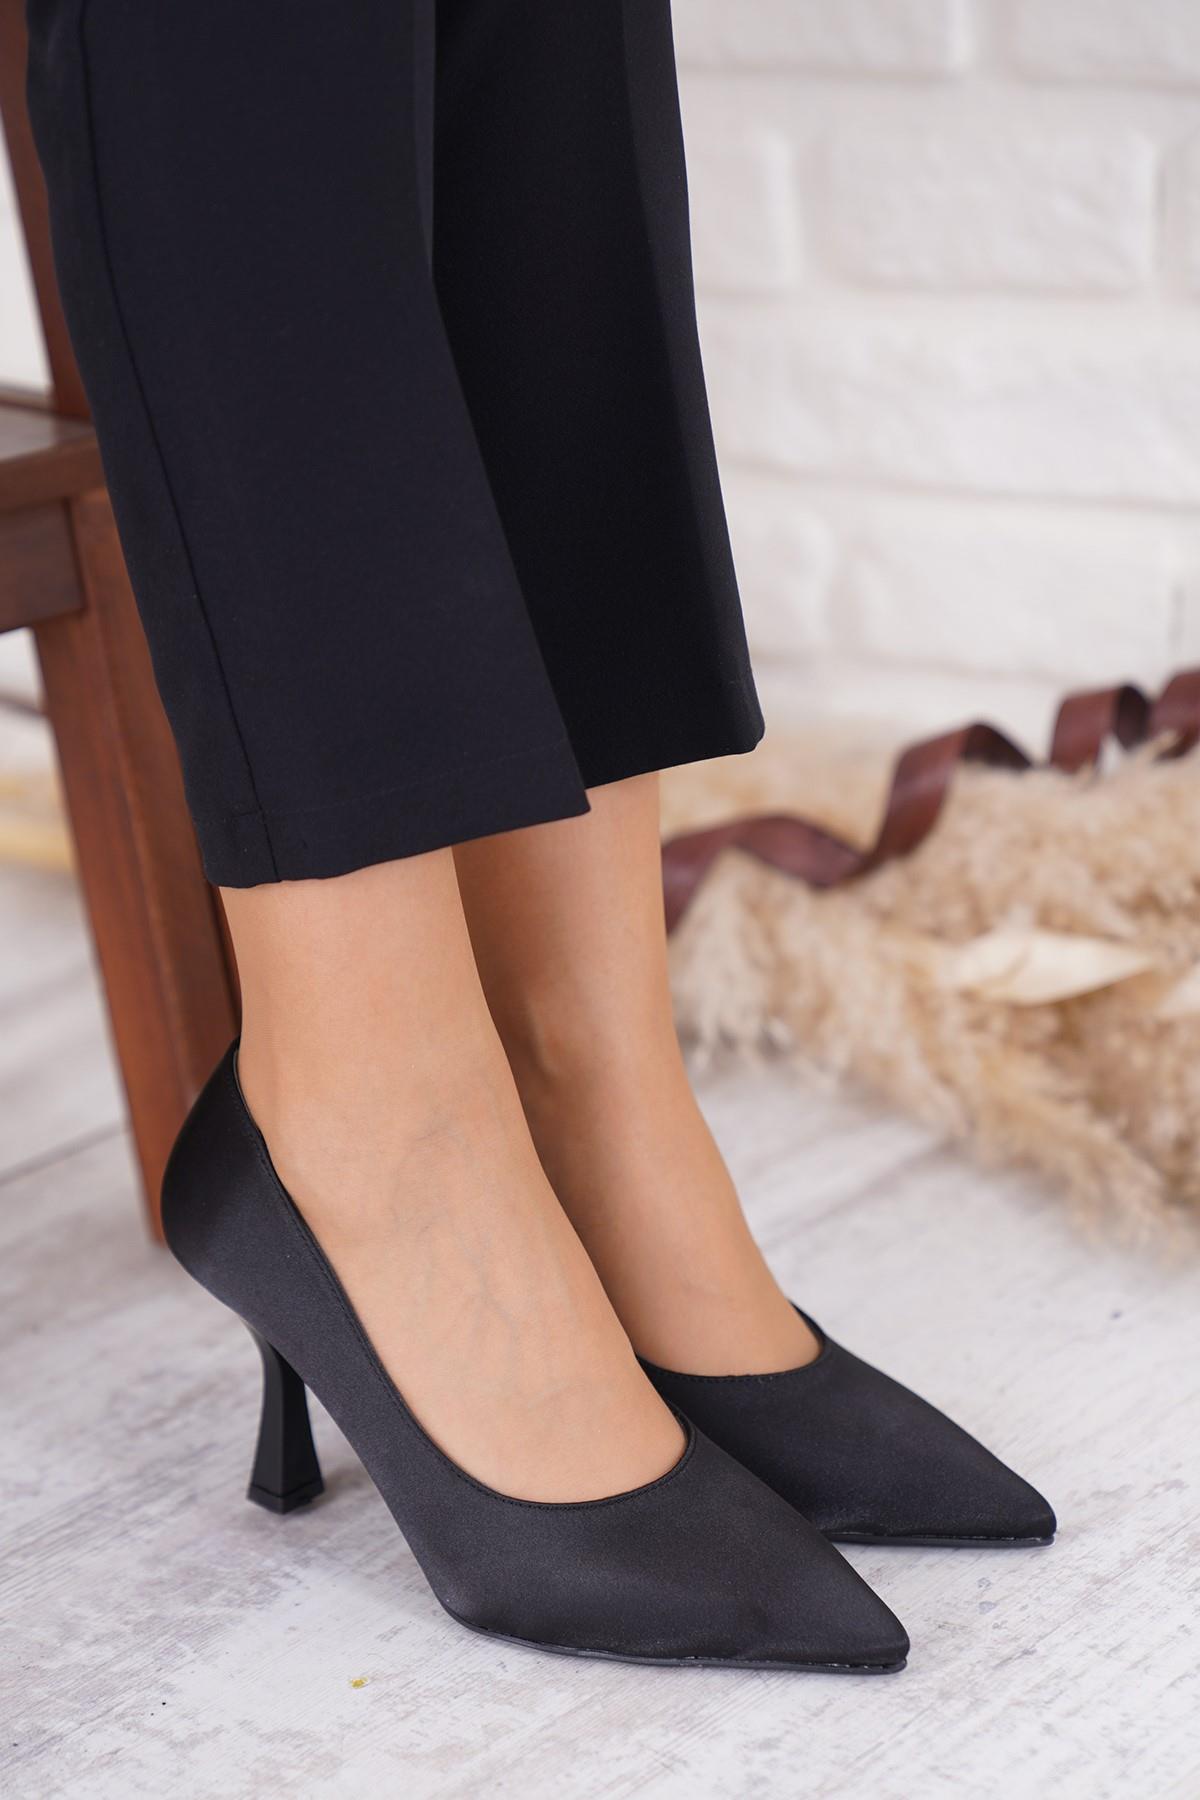 Landry Sivri Düz Stiletto Kadın Topuklu Ayakkabı Siyah Saten